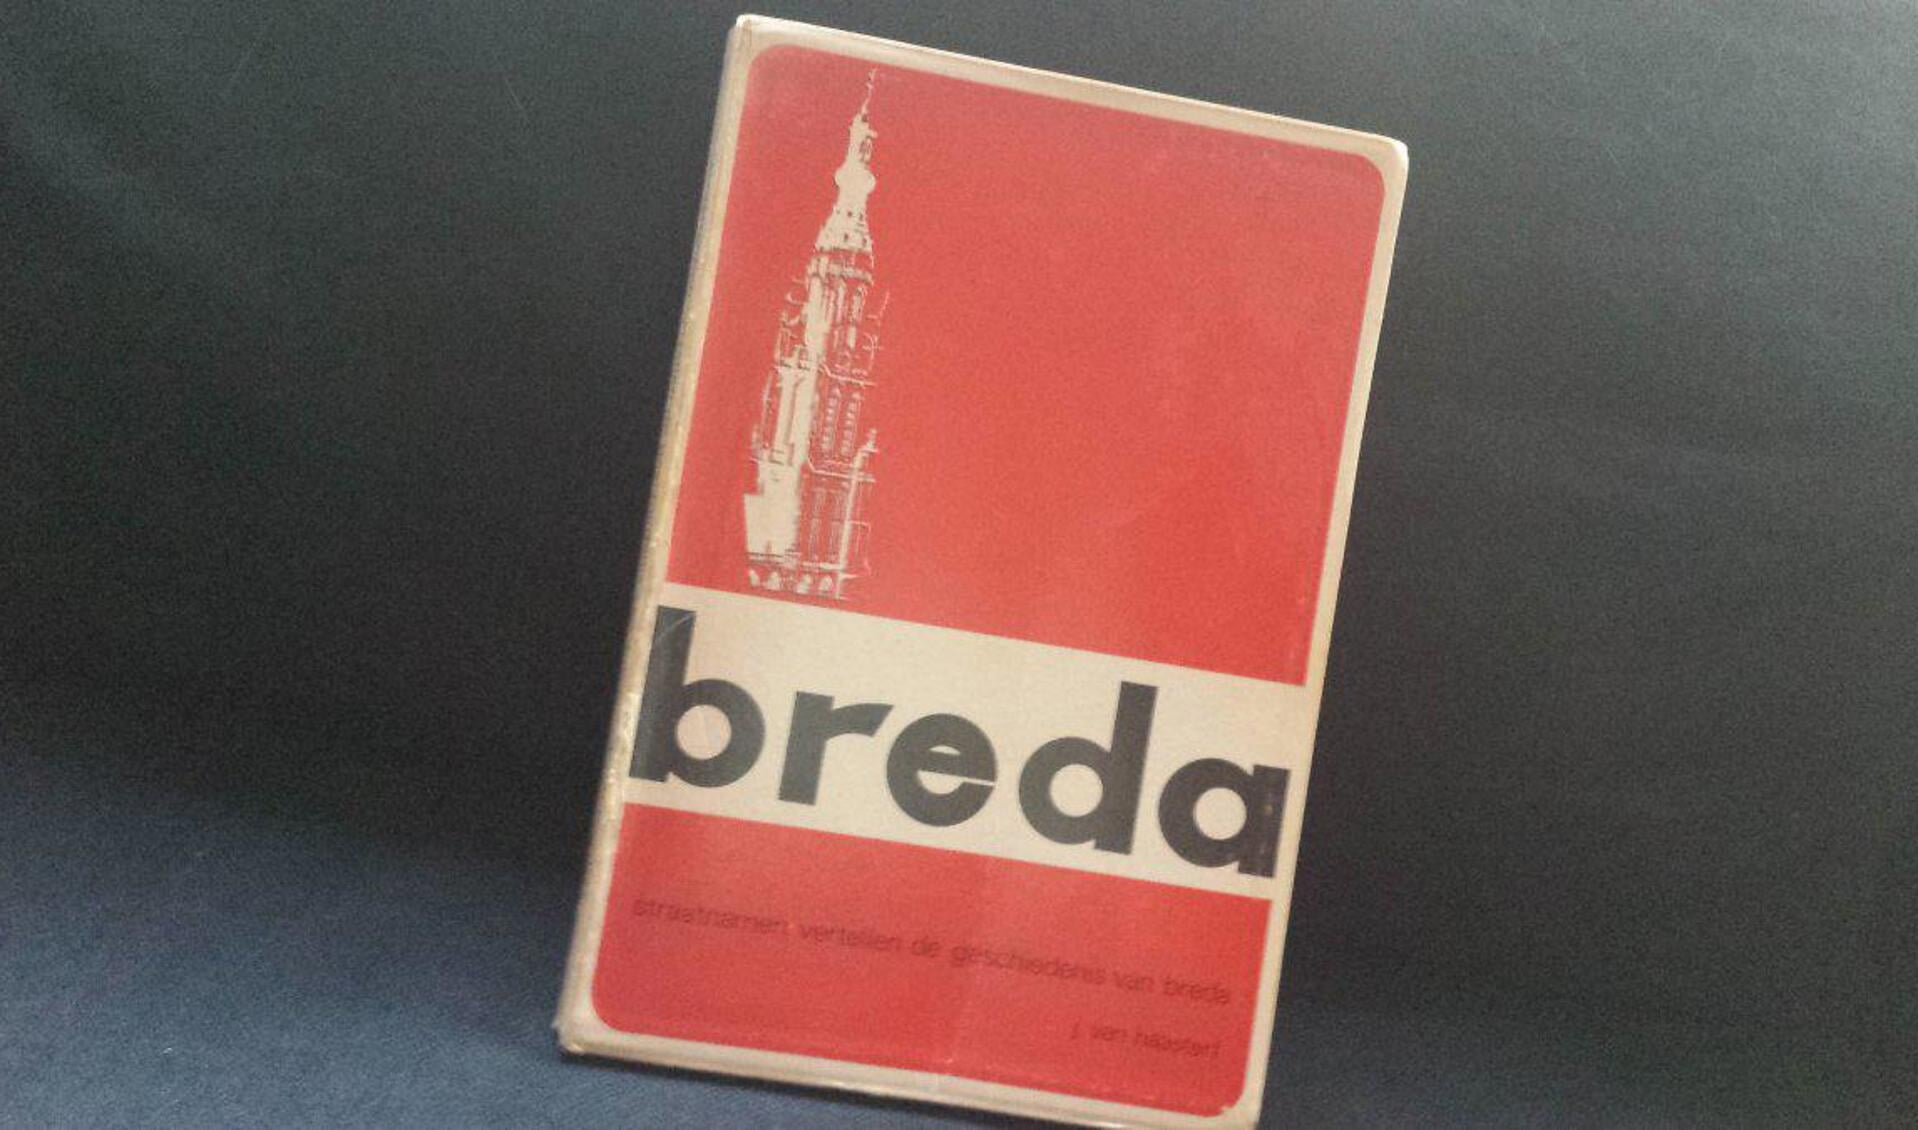 Straatnamen vertellen de geschiedenis van Breda